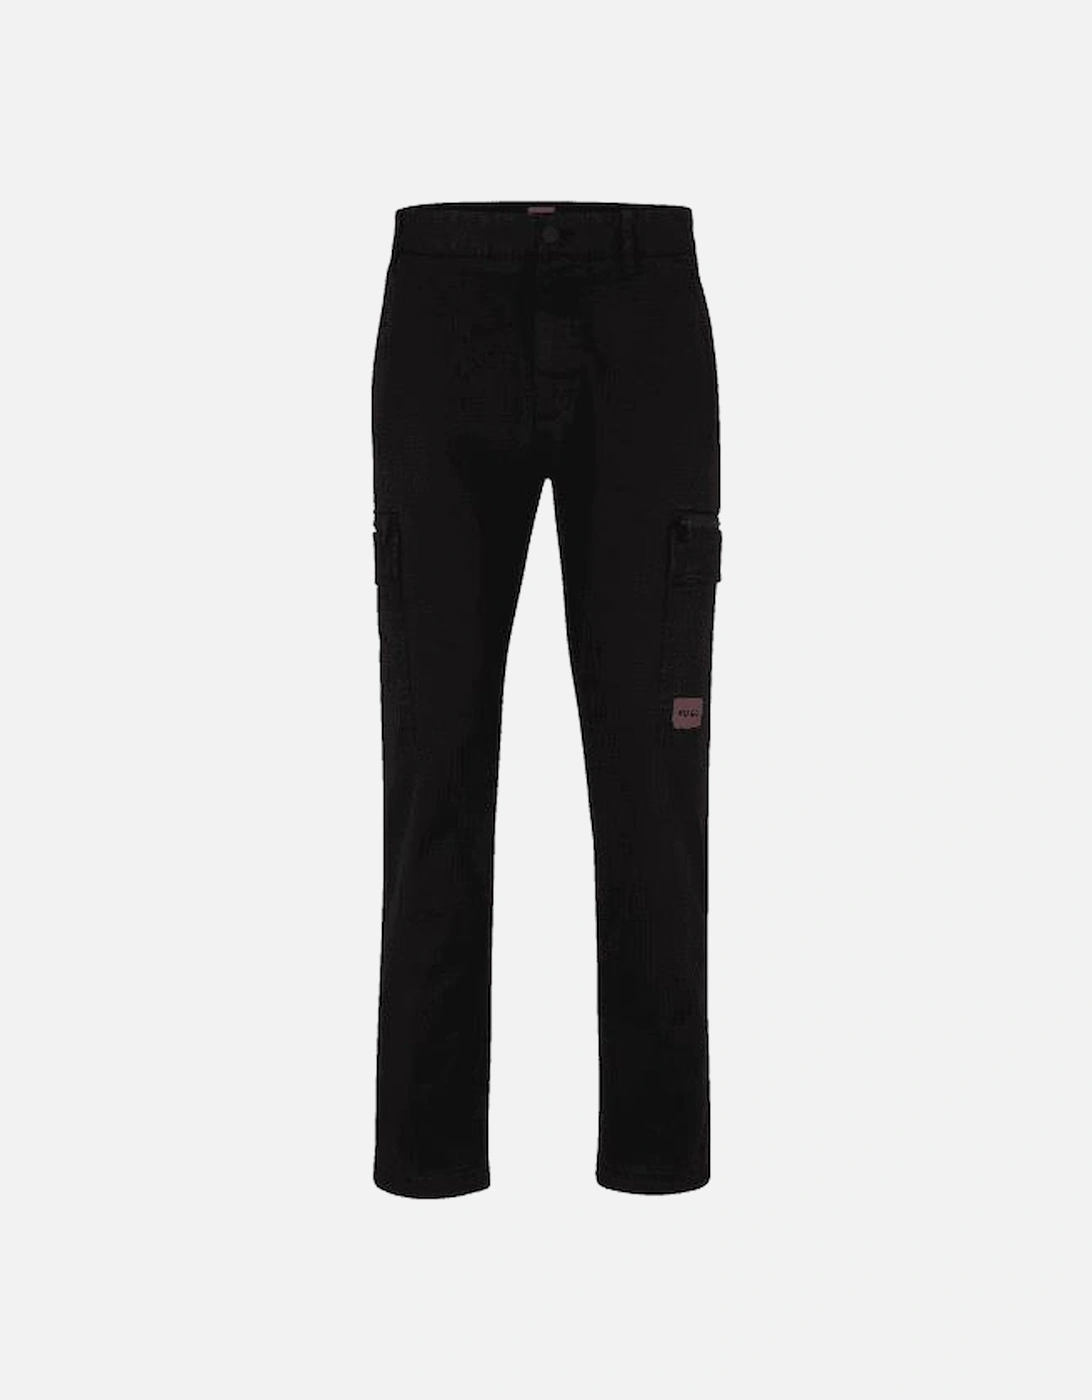 Glian231D Zip Pocket Black Cargo Pants, 6 of 5